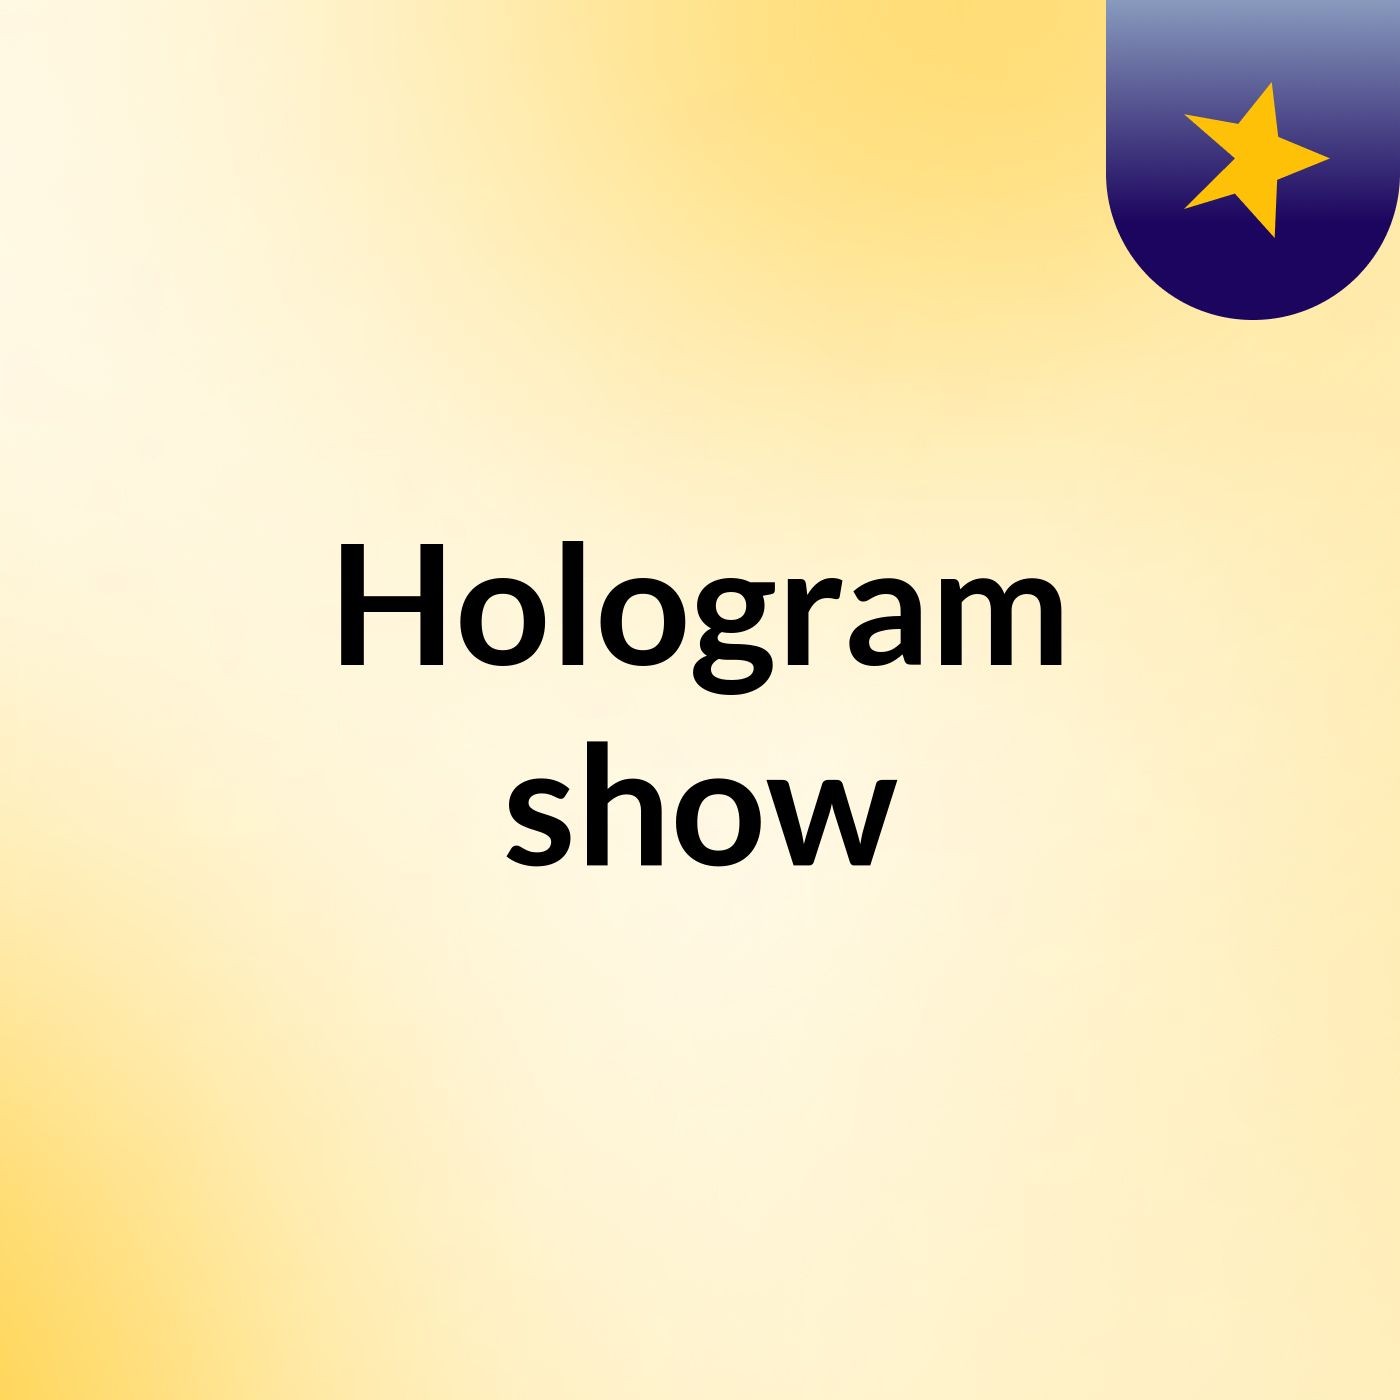 Hologram show